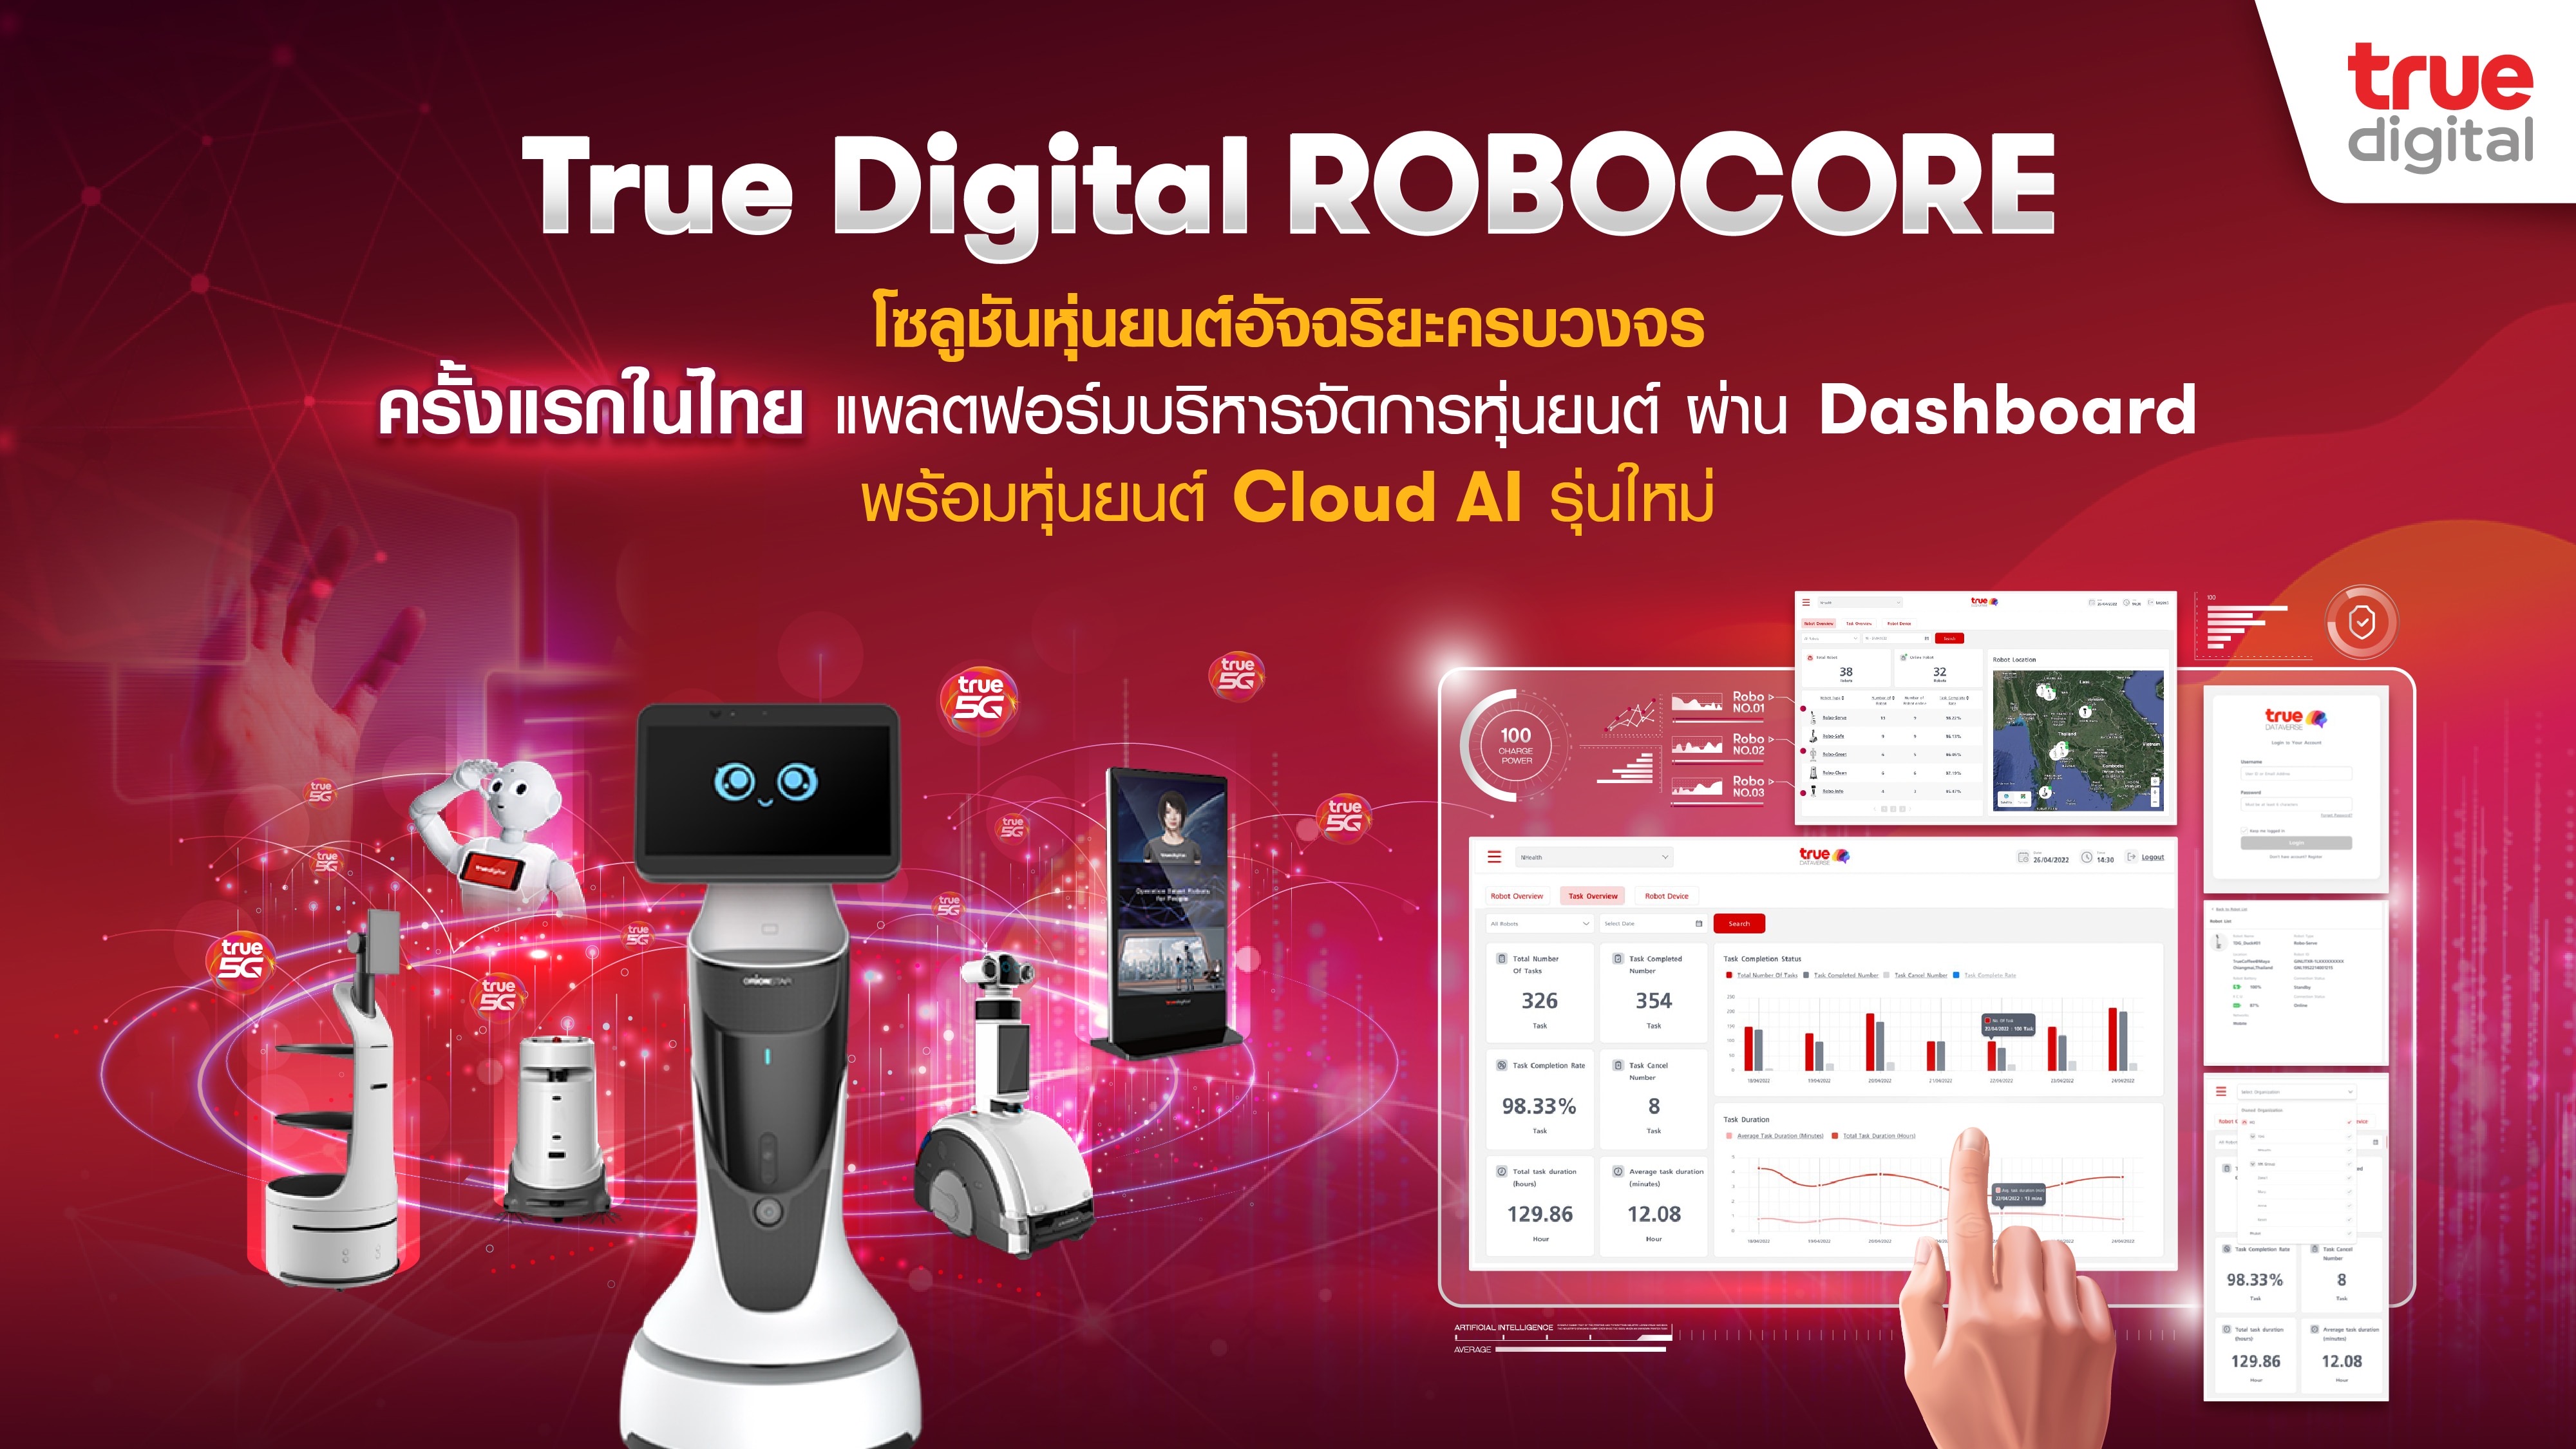 ทรู ดิจิทัล โซลูชันส์ เปิดตัวแพลตฟอร์มบริหารจัดการหุ่นยนต์ ผ่าน Dashboard ต่อยอด True Digital RoboCore พร้อมแนะนำหุ่นยนต์ Cloud AI รุ่นใหม่ Mini Robot เสริมแกร่งธุรกิจบริการยุคดิจิทัล